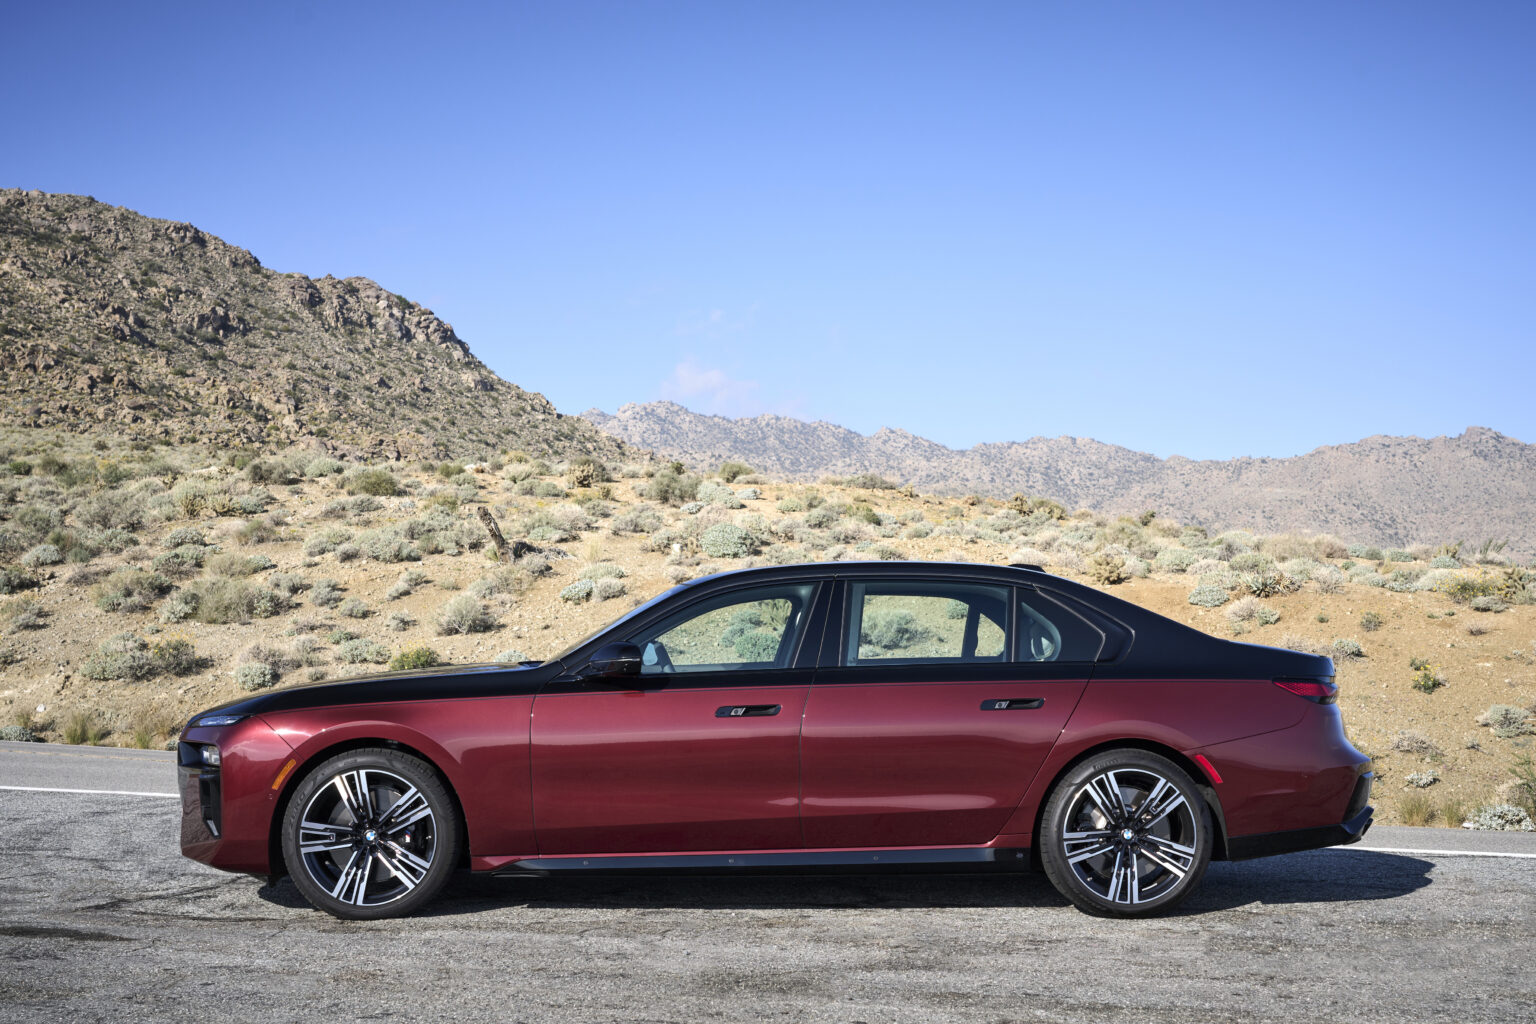 2023 BMW i7 Luxury Electric Sedan